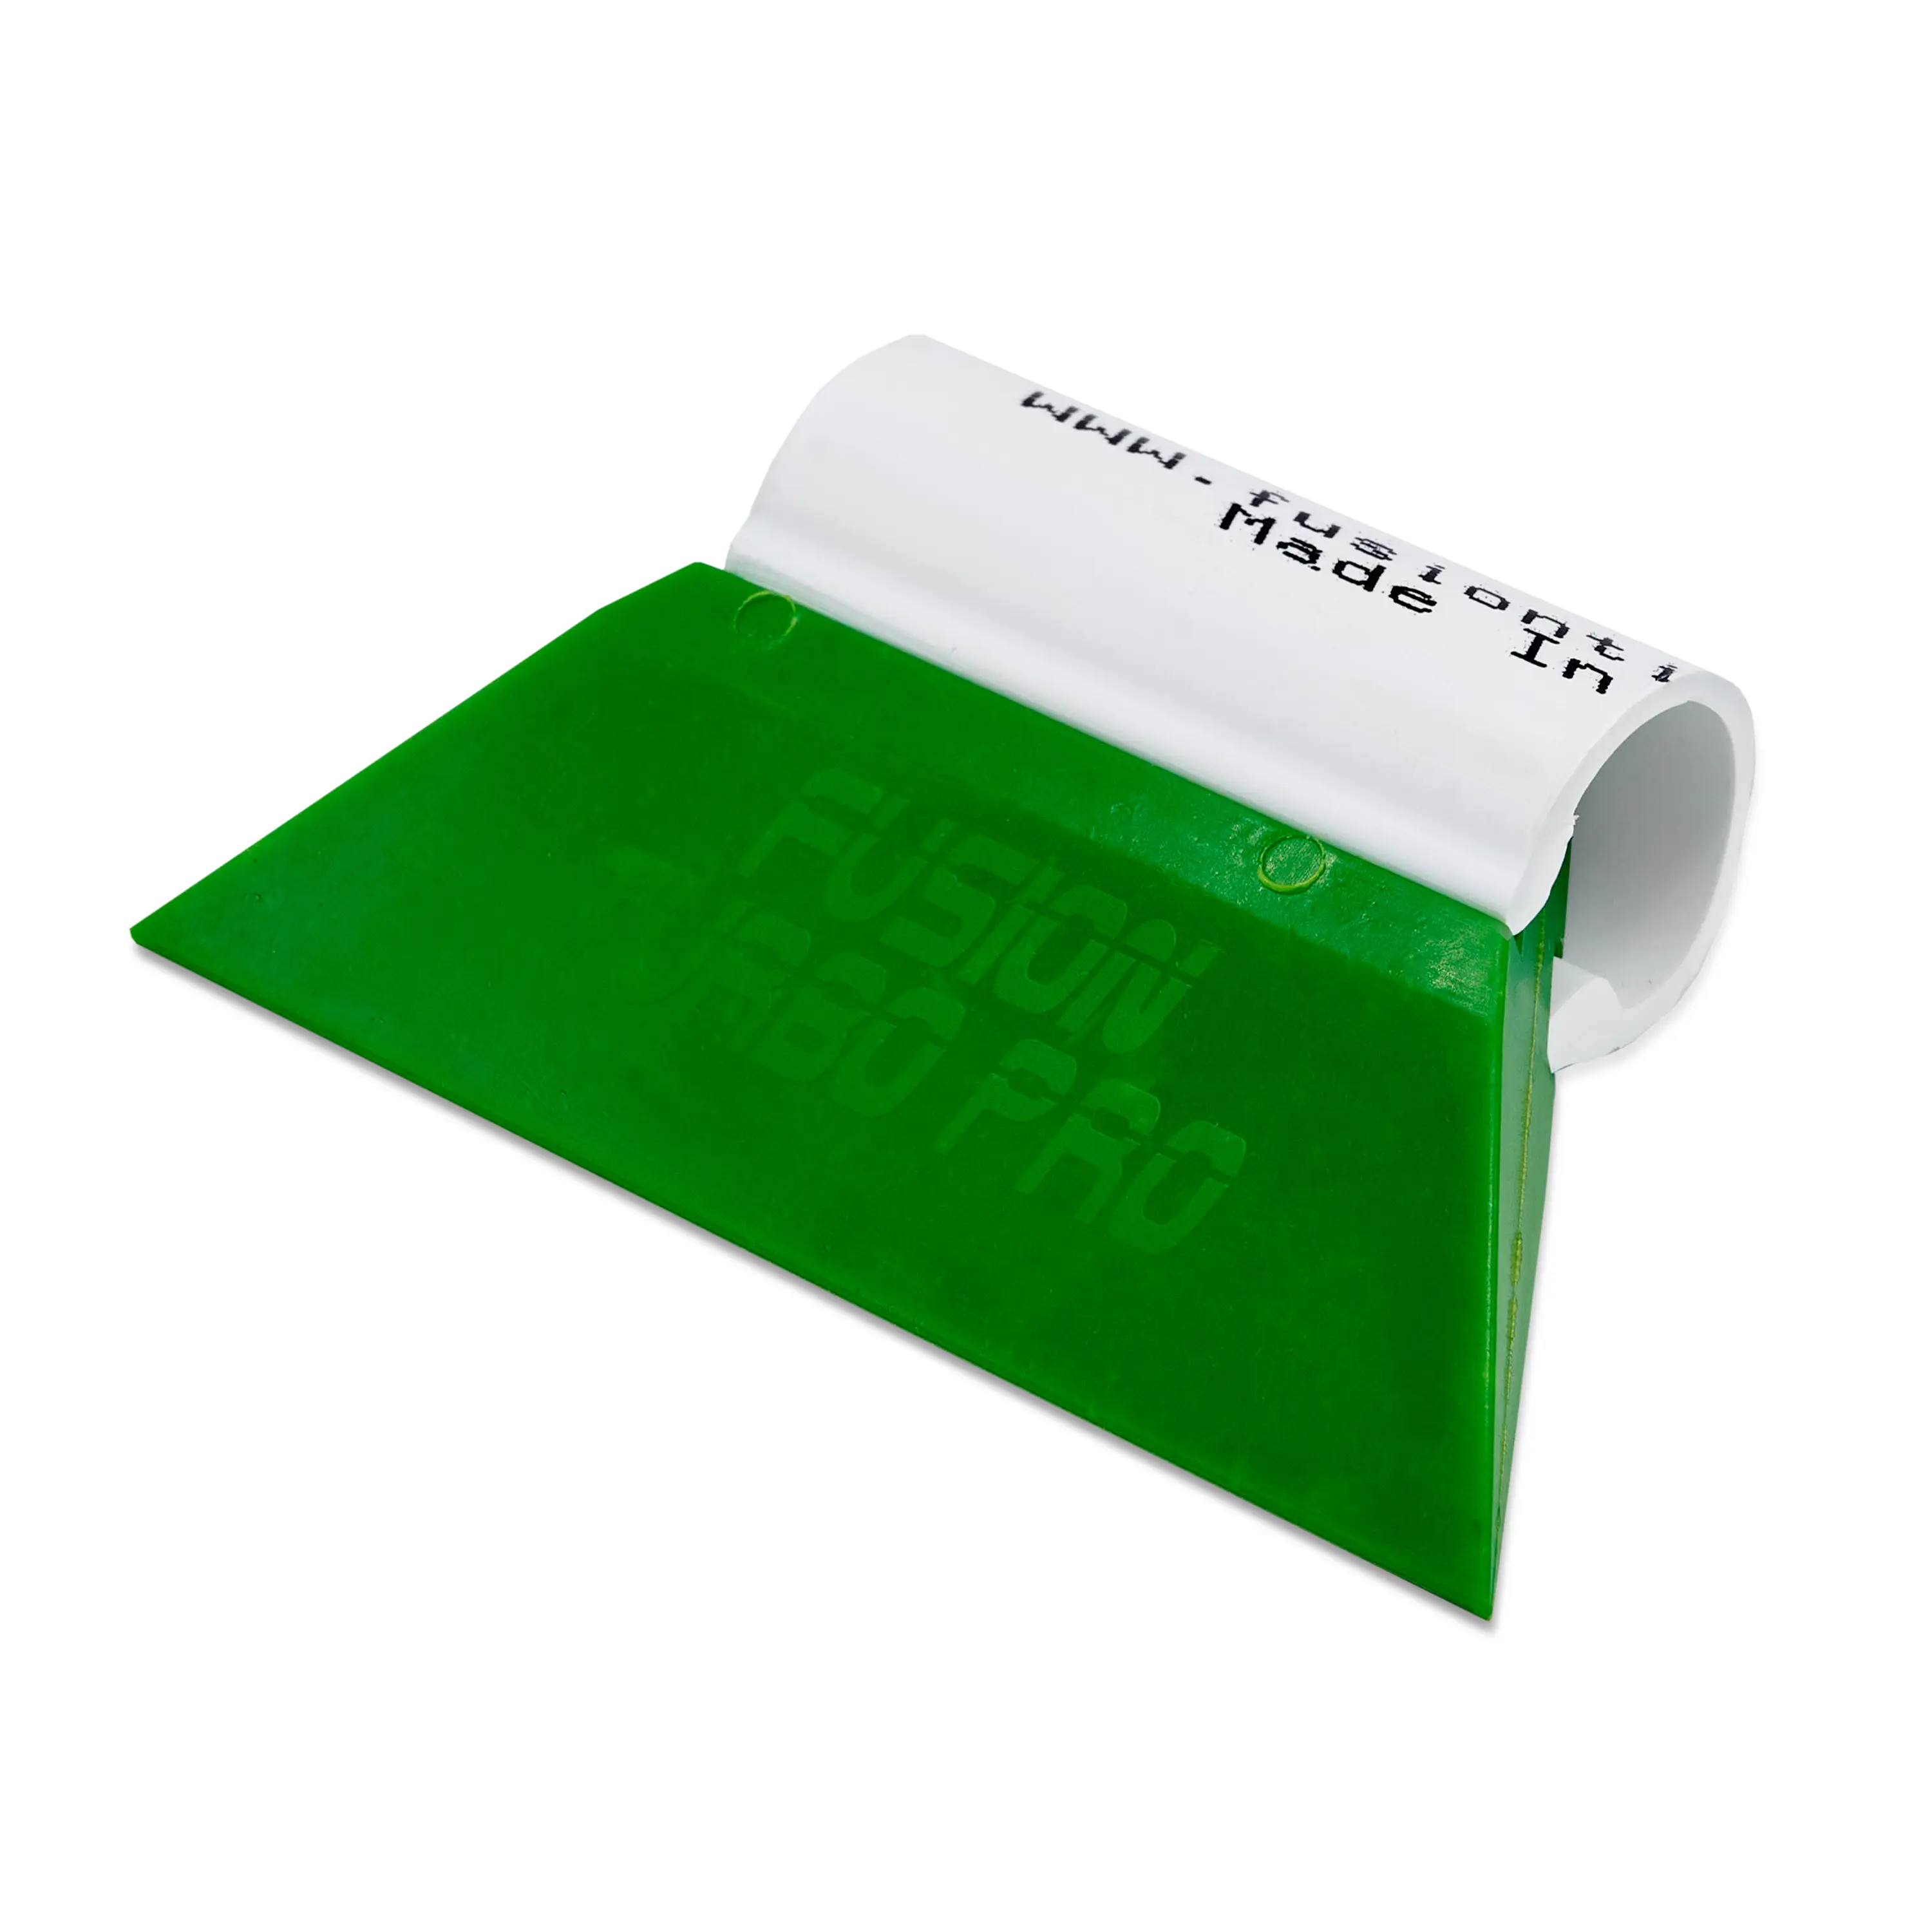 Выгонка FUSION TURBO PRO зеленая с пластиковой ручкой, 8,9 см.